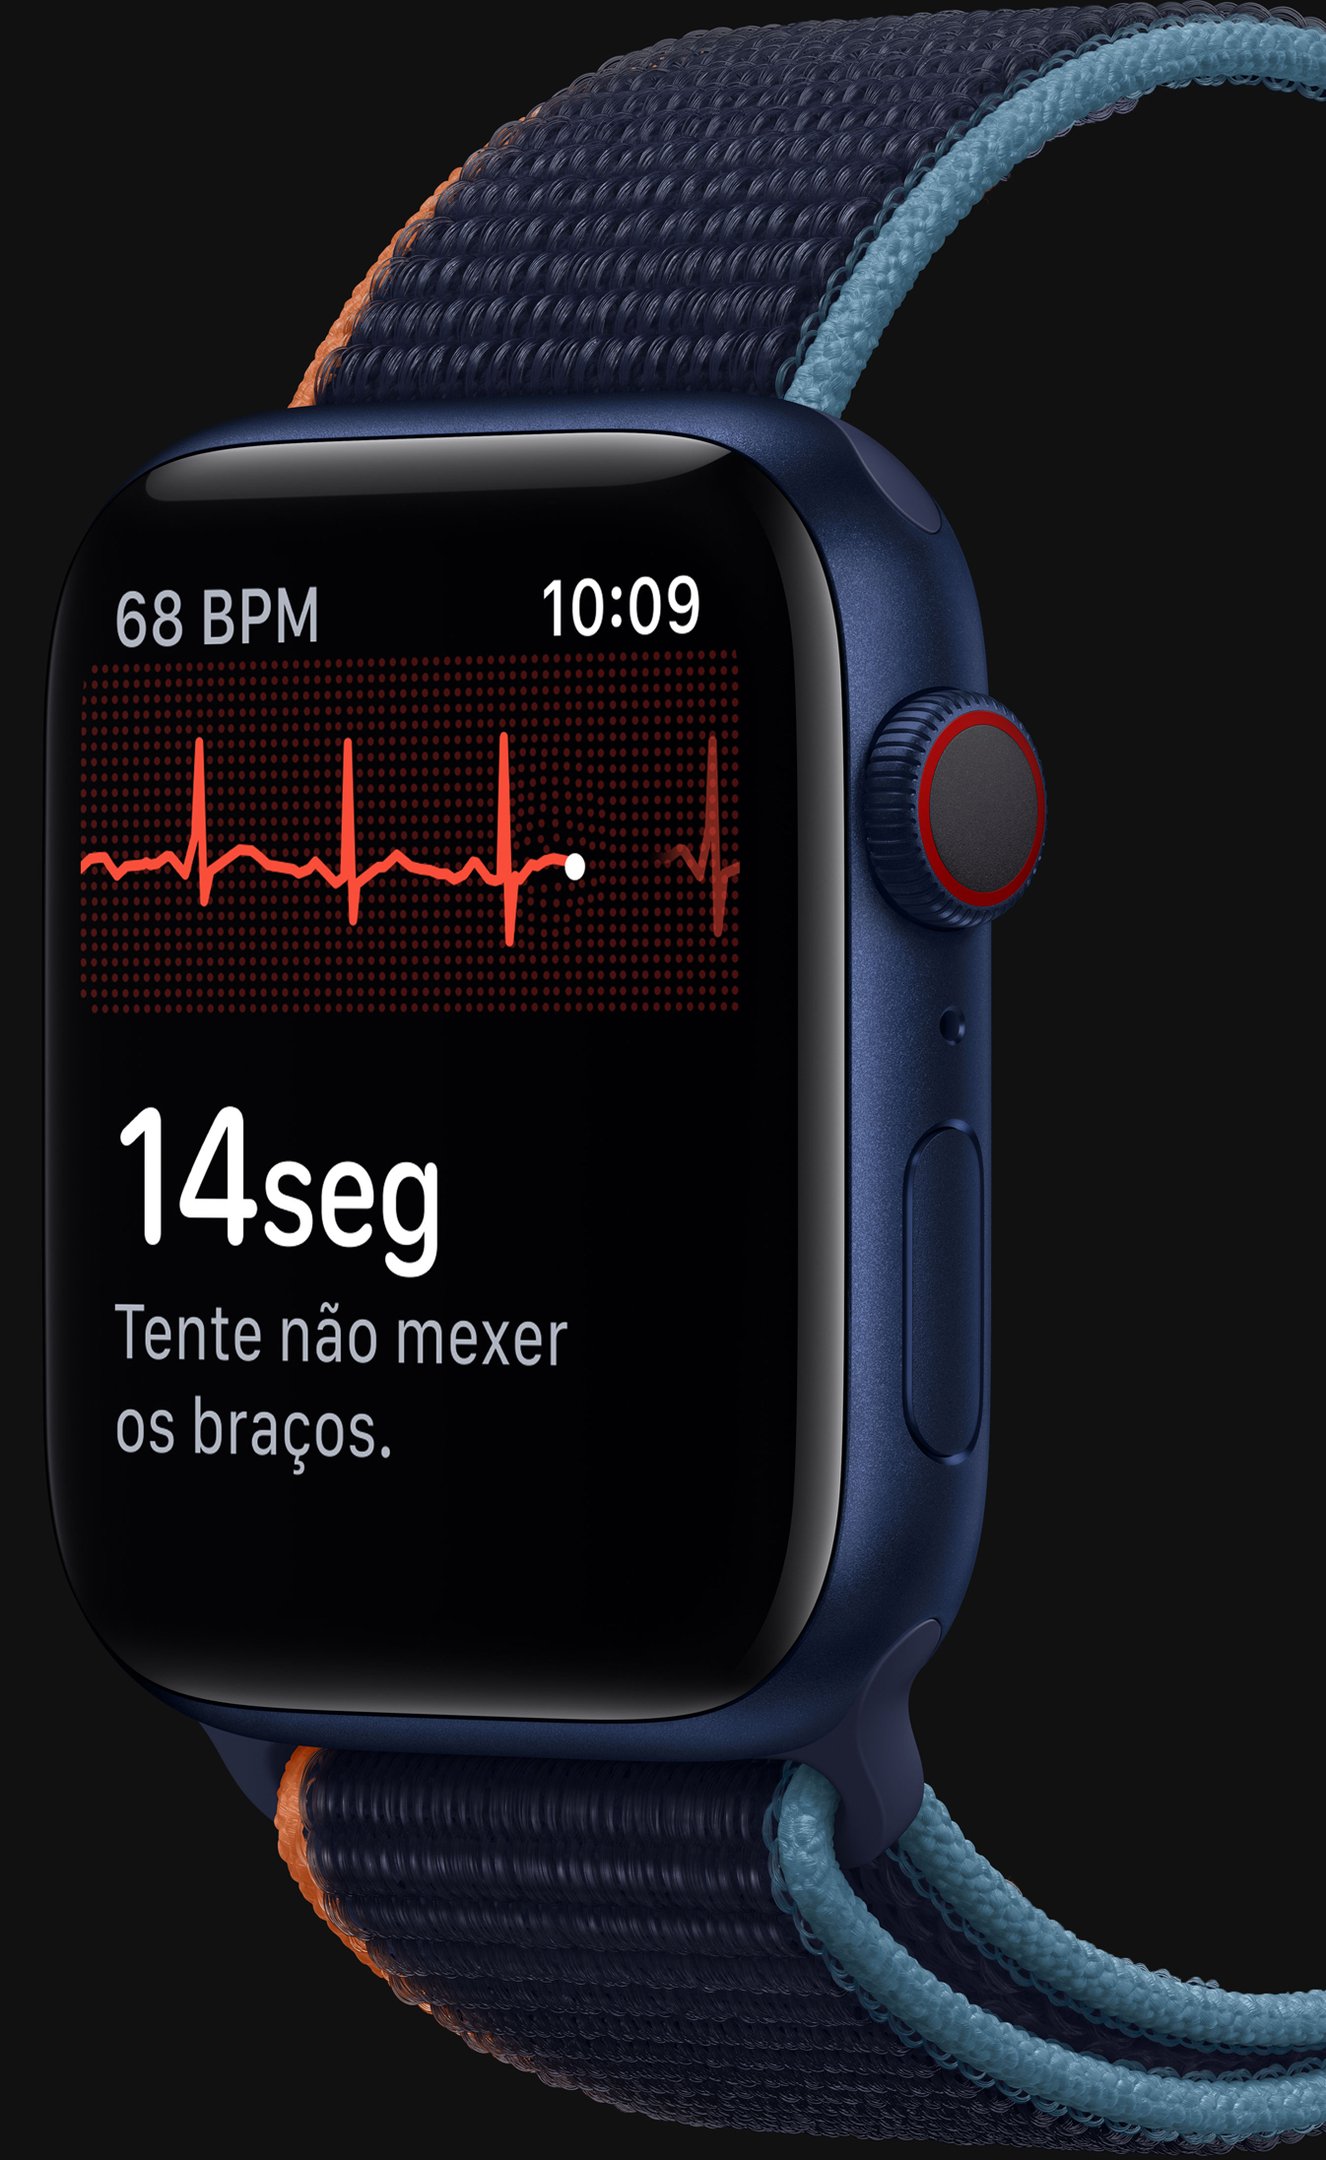 Imagem do Apple Watch Series 6 para comparação